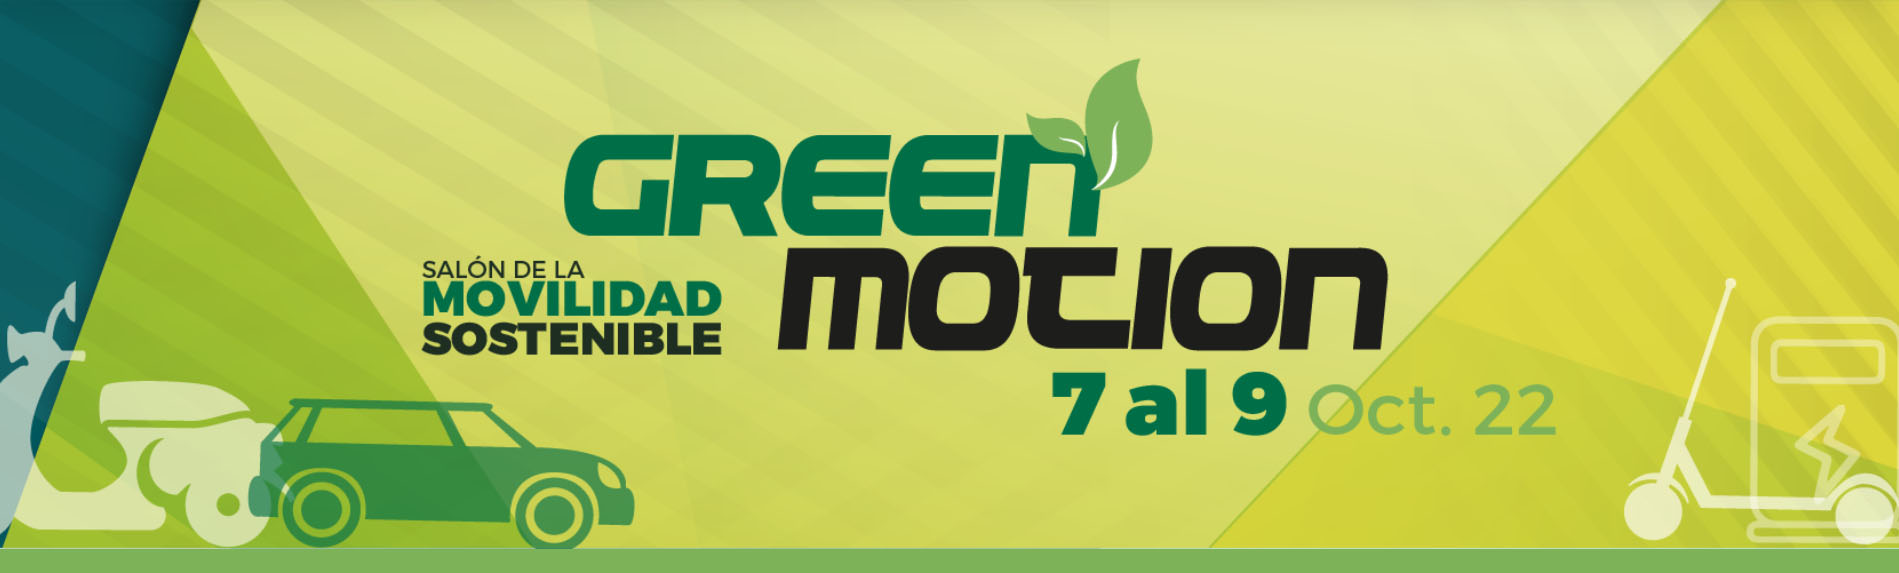 GREEN MOTION - 1er Salón de la Movilidad Sostenible